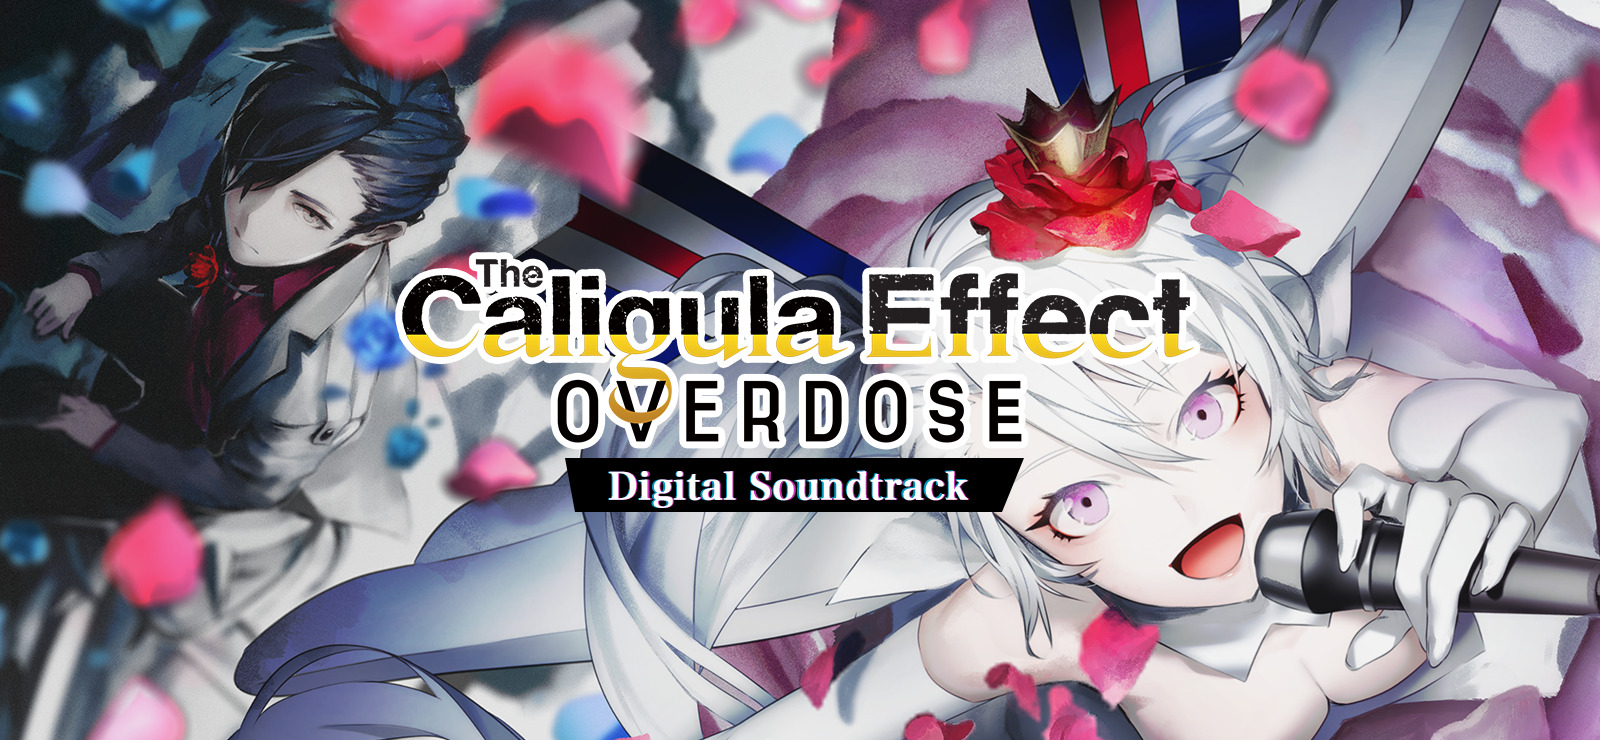 The Caligula Effect: Overdose - Digital Soundtrack DLC Steam CD Key, $4.36